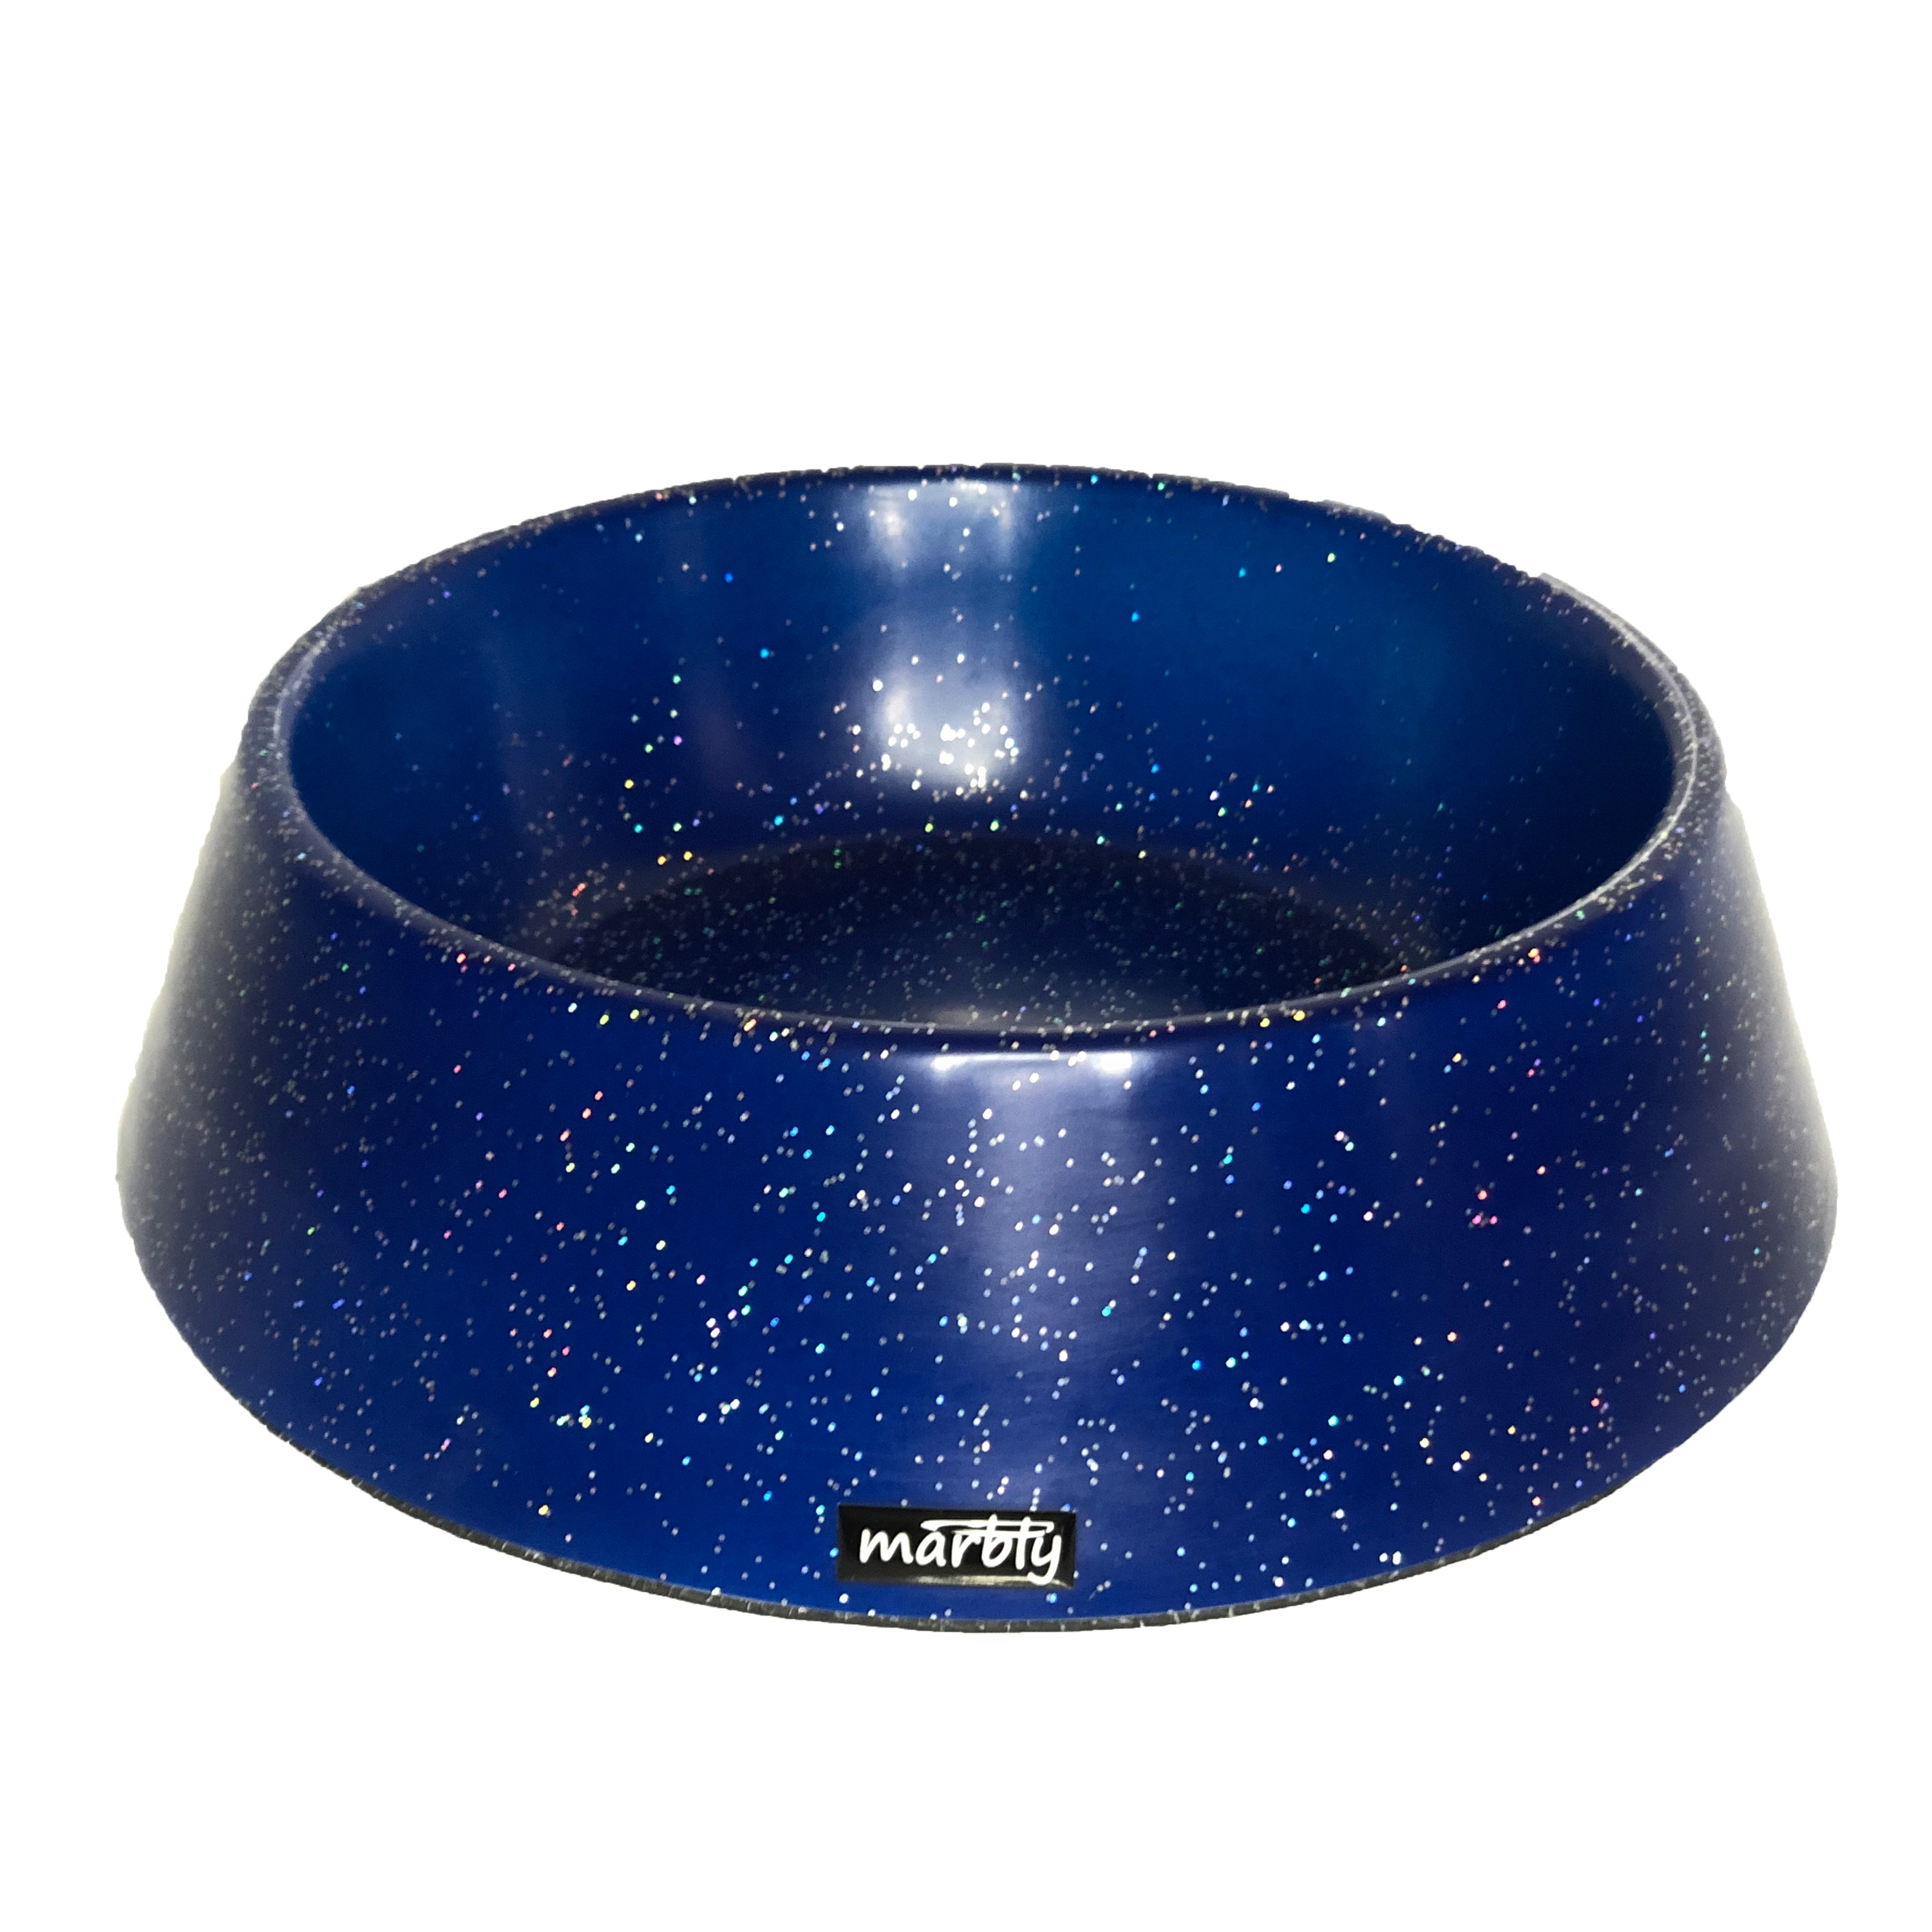 Marbly Mavi Galaxy Mermerit Kedi Köpek Mama Su Kabı 235 ml